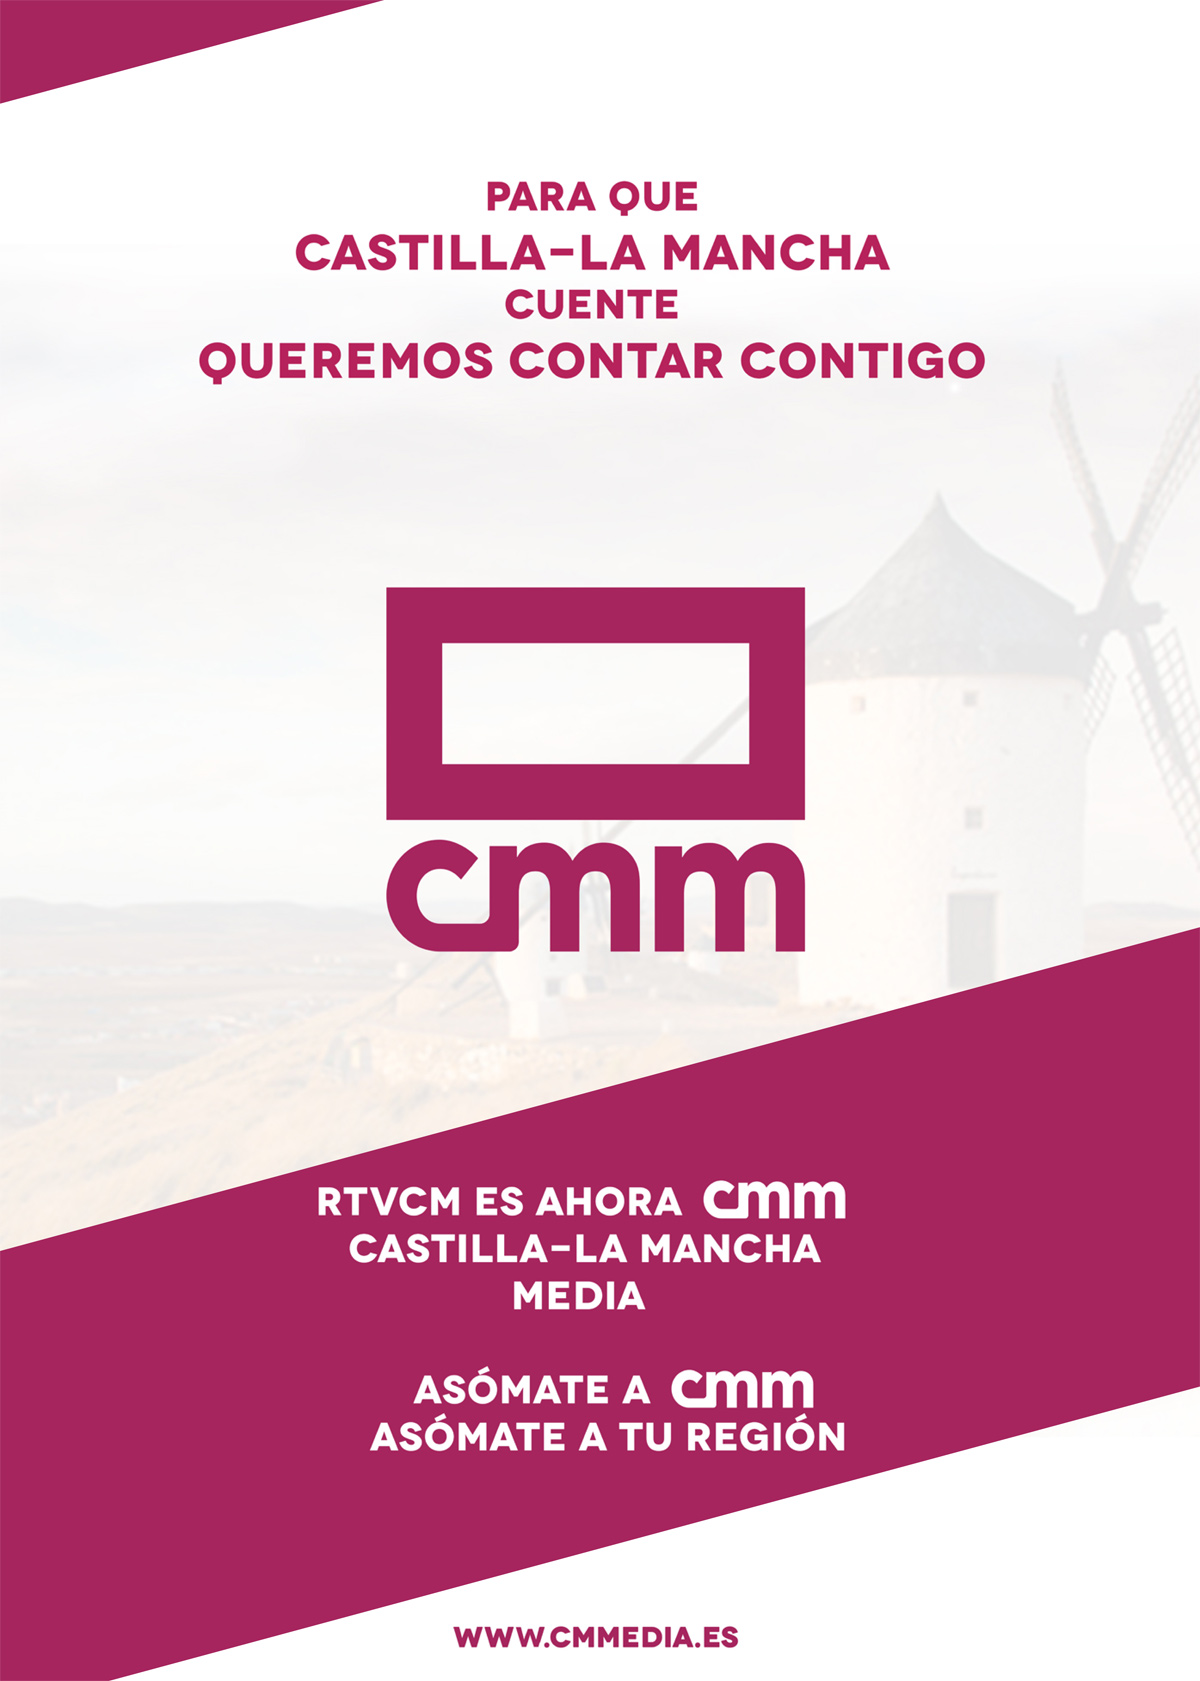 Castilla-La Mancha Media visita Pedro Muñoz para promocionar su nueva marca